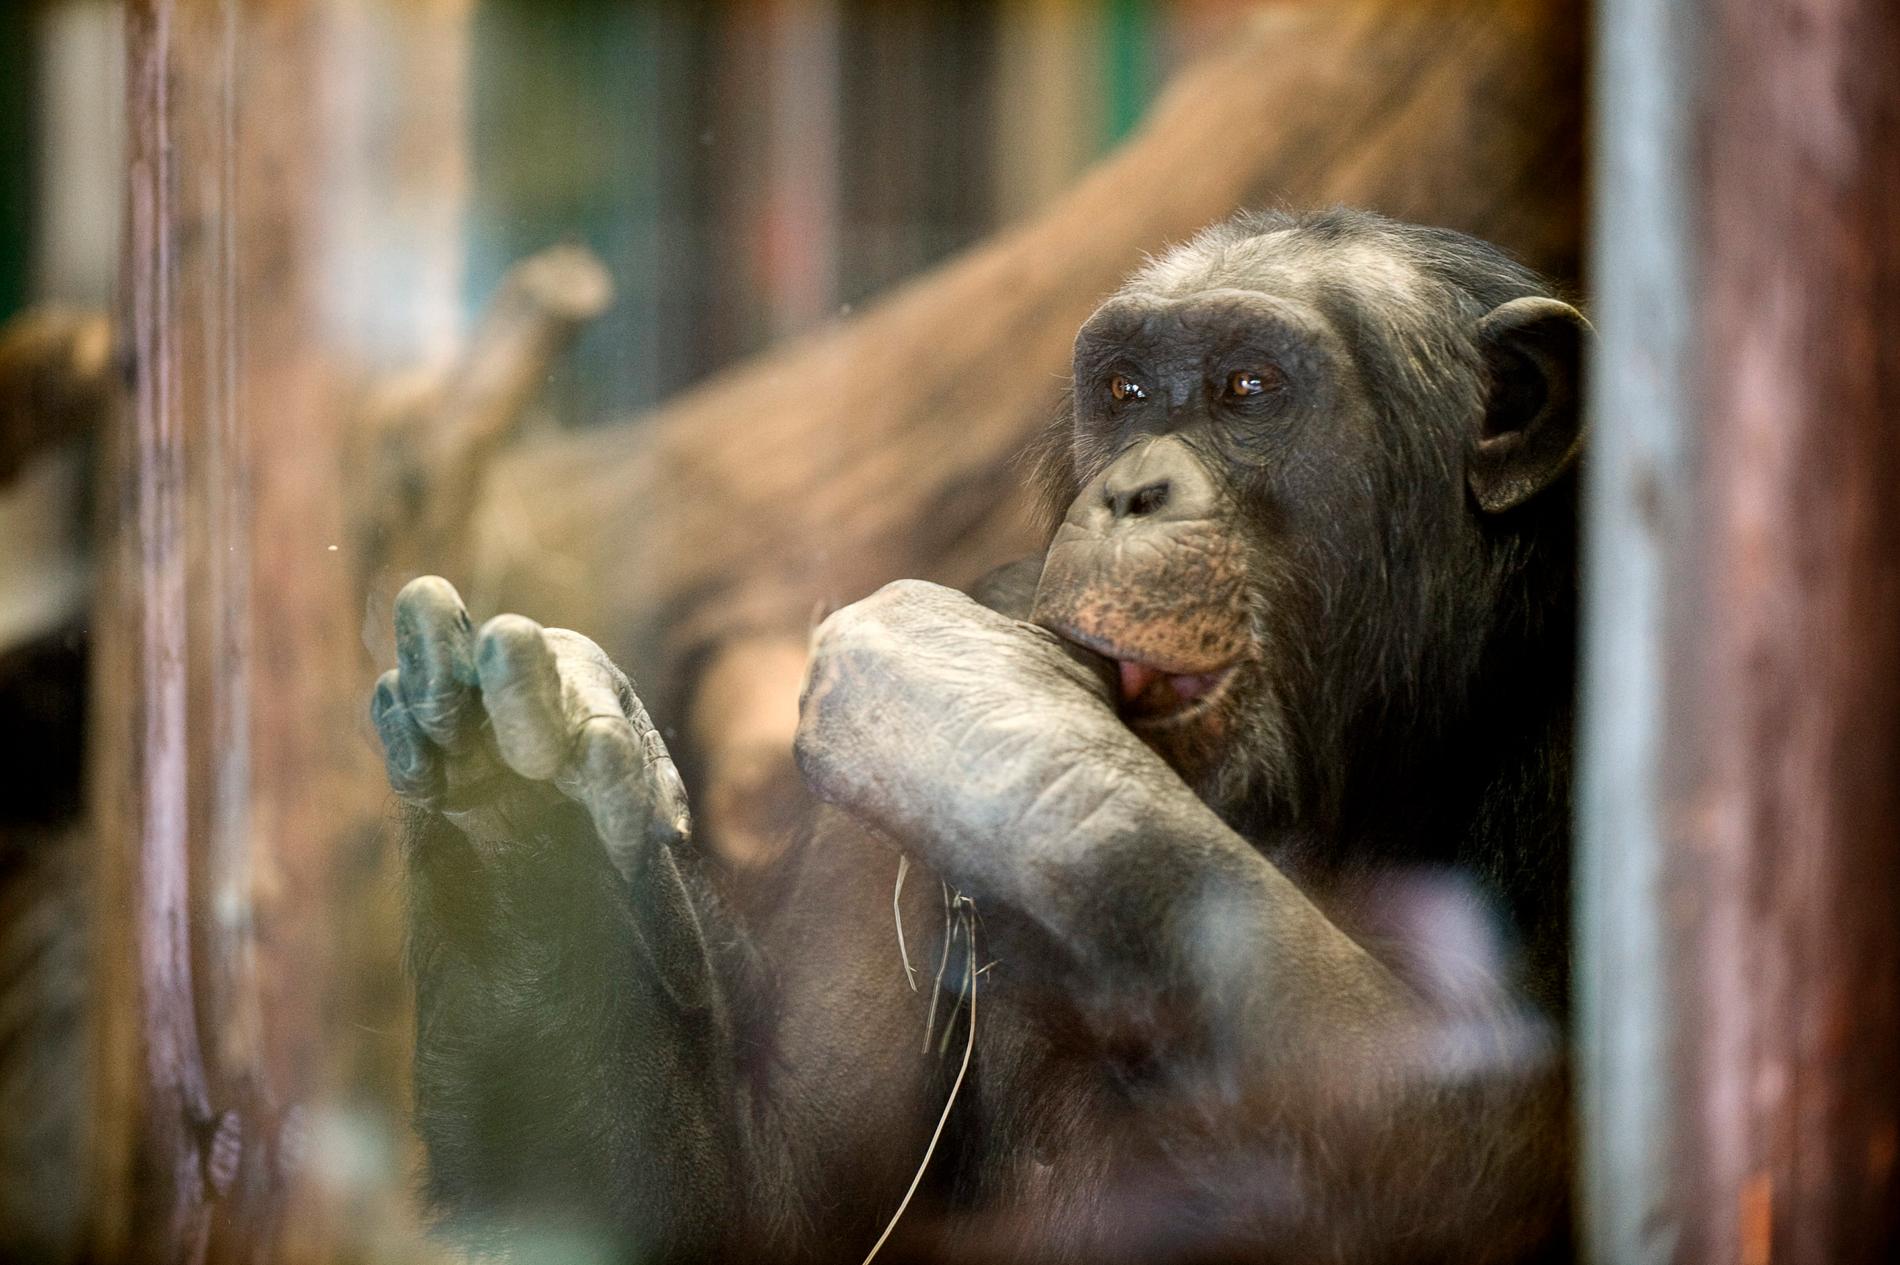 Santino, en av schimpanserna i Furuvik